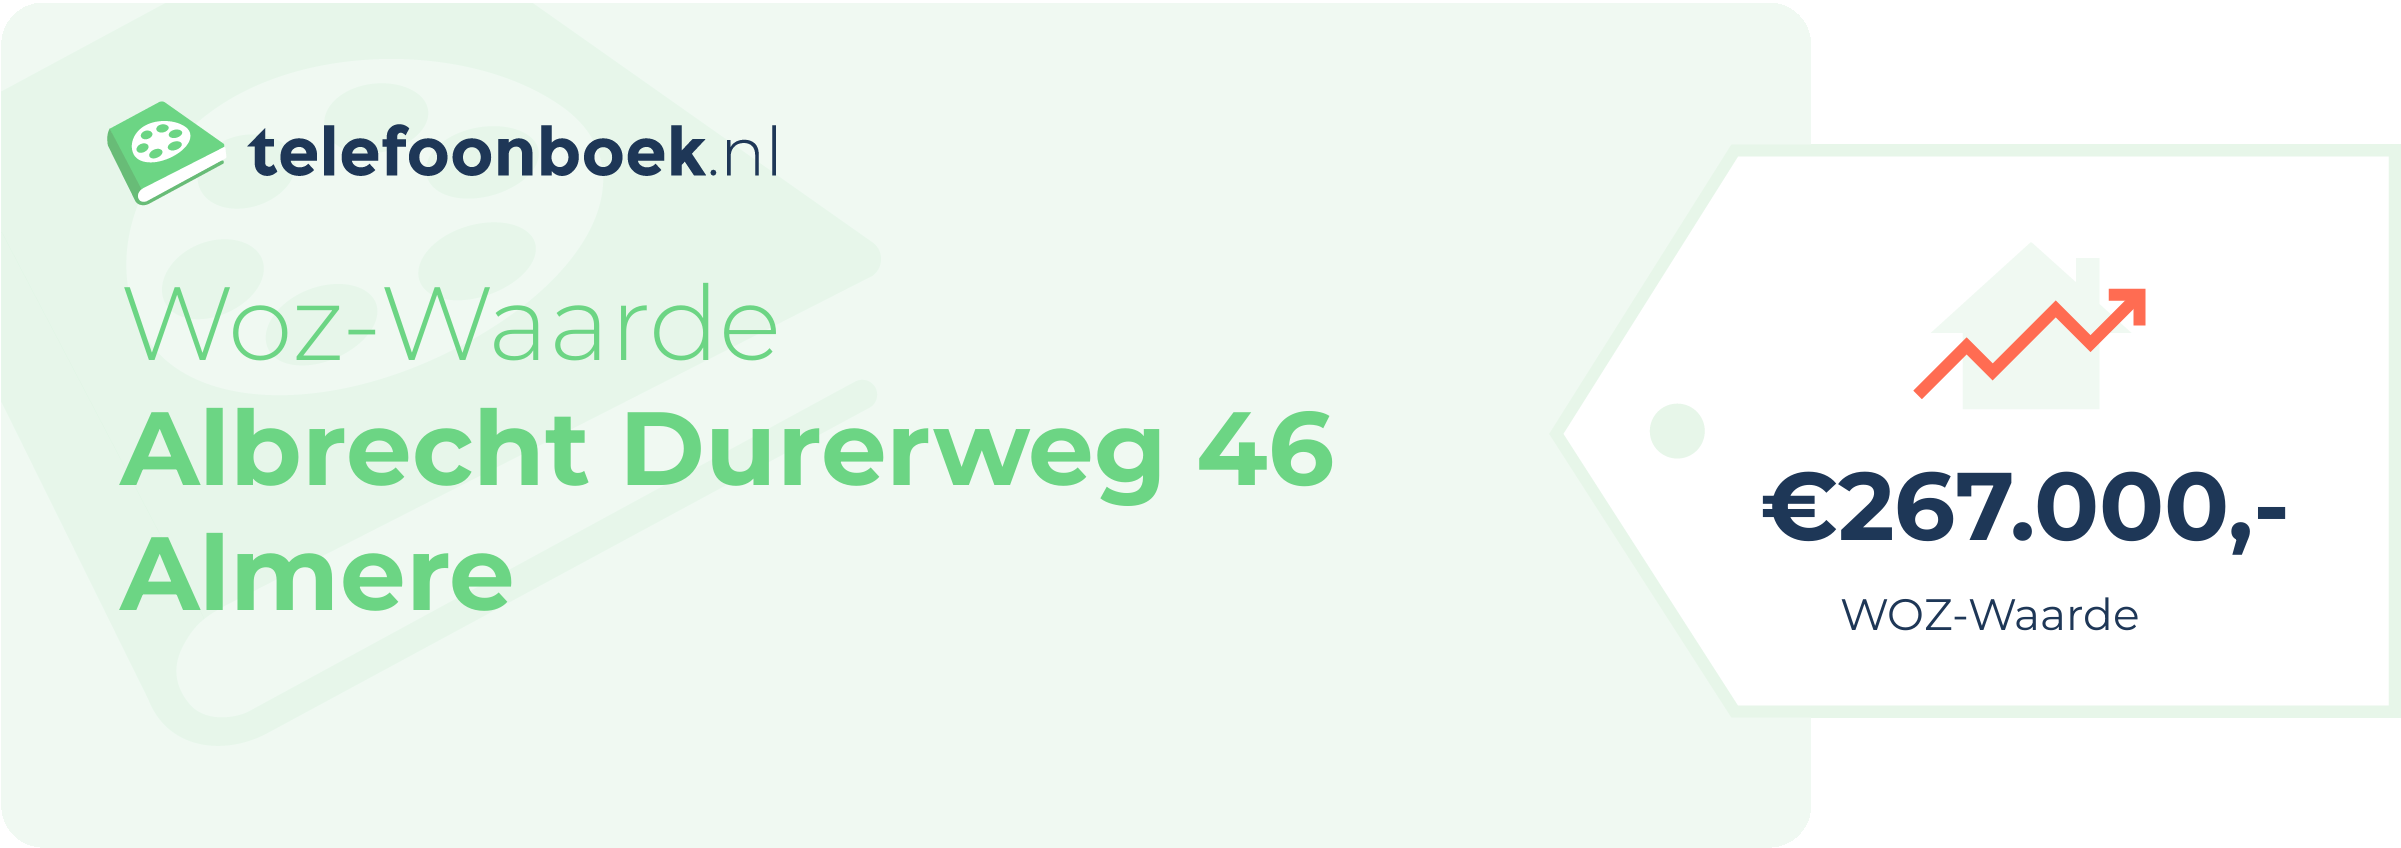 WOZ-waarde Albrecht Durerweg 46 Almere